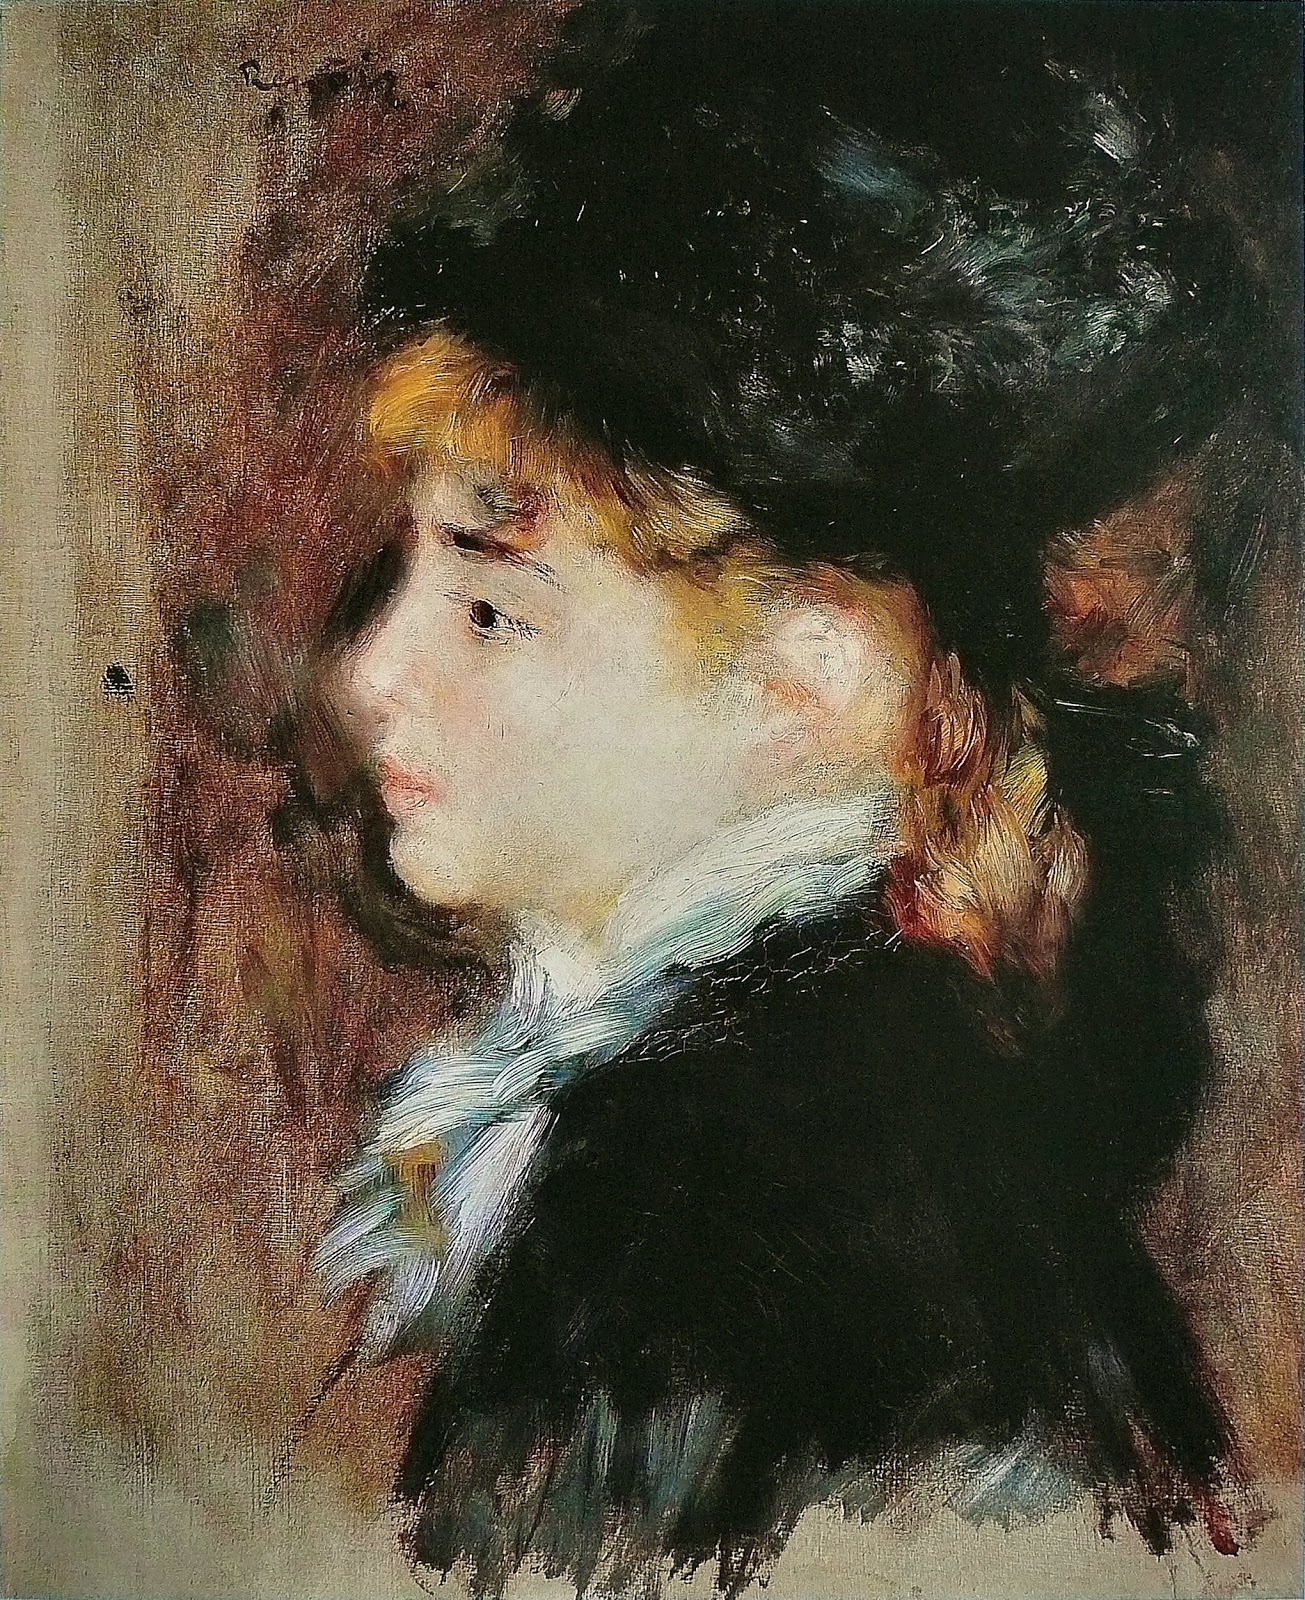 Pierre+Auguste+Renoir-1841-1-19 (995).jpg